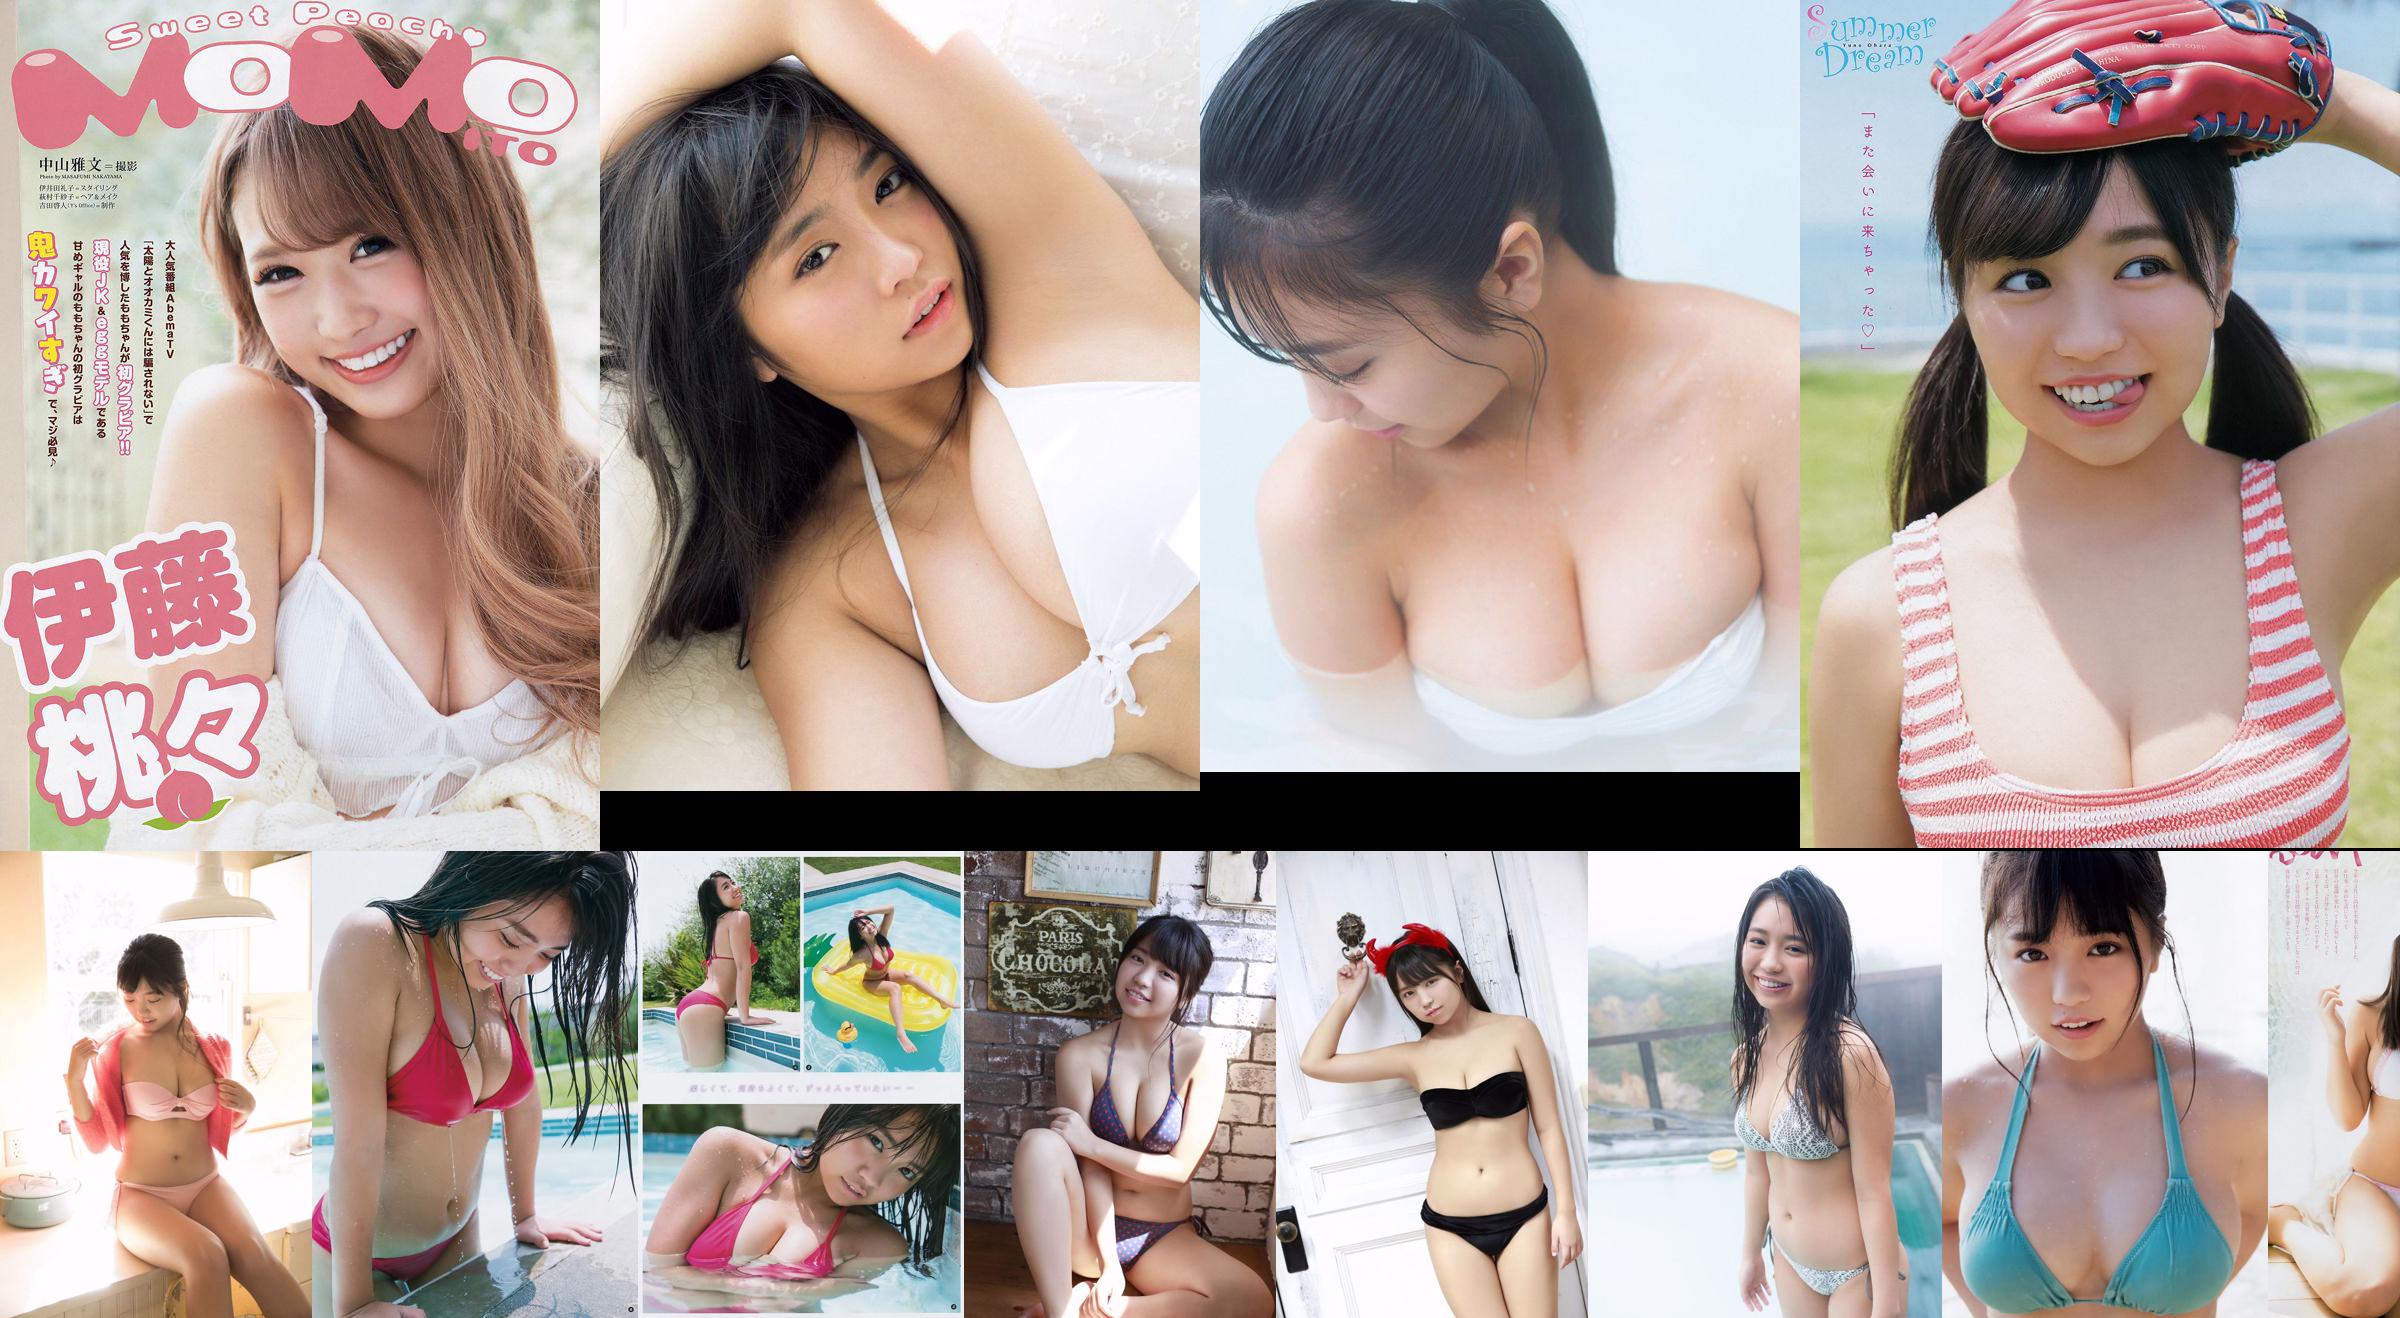 Yuno Ohara Yuka Ogura Miyu Kitamuki Kasumi Arimura Aya Kawasaki Juri Takahashi Erika Suzuki [Wöchentlicher Playboy] 2018 Nr. 21 Foto No.5397db Seite 14